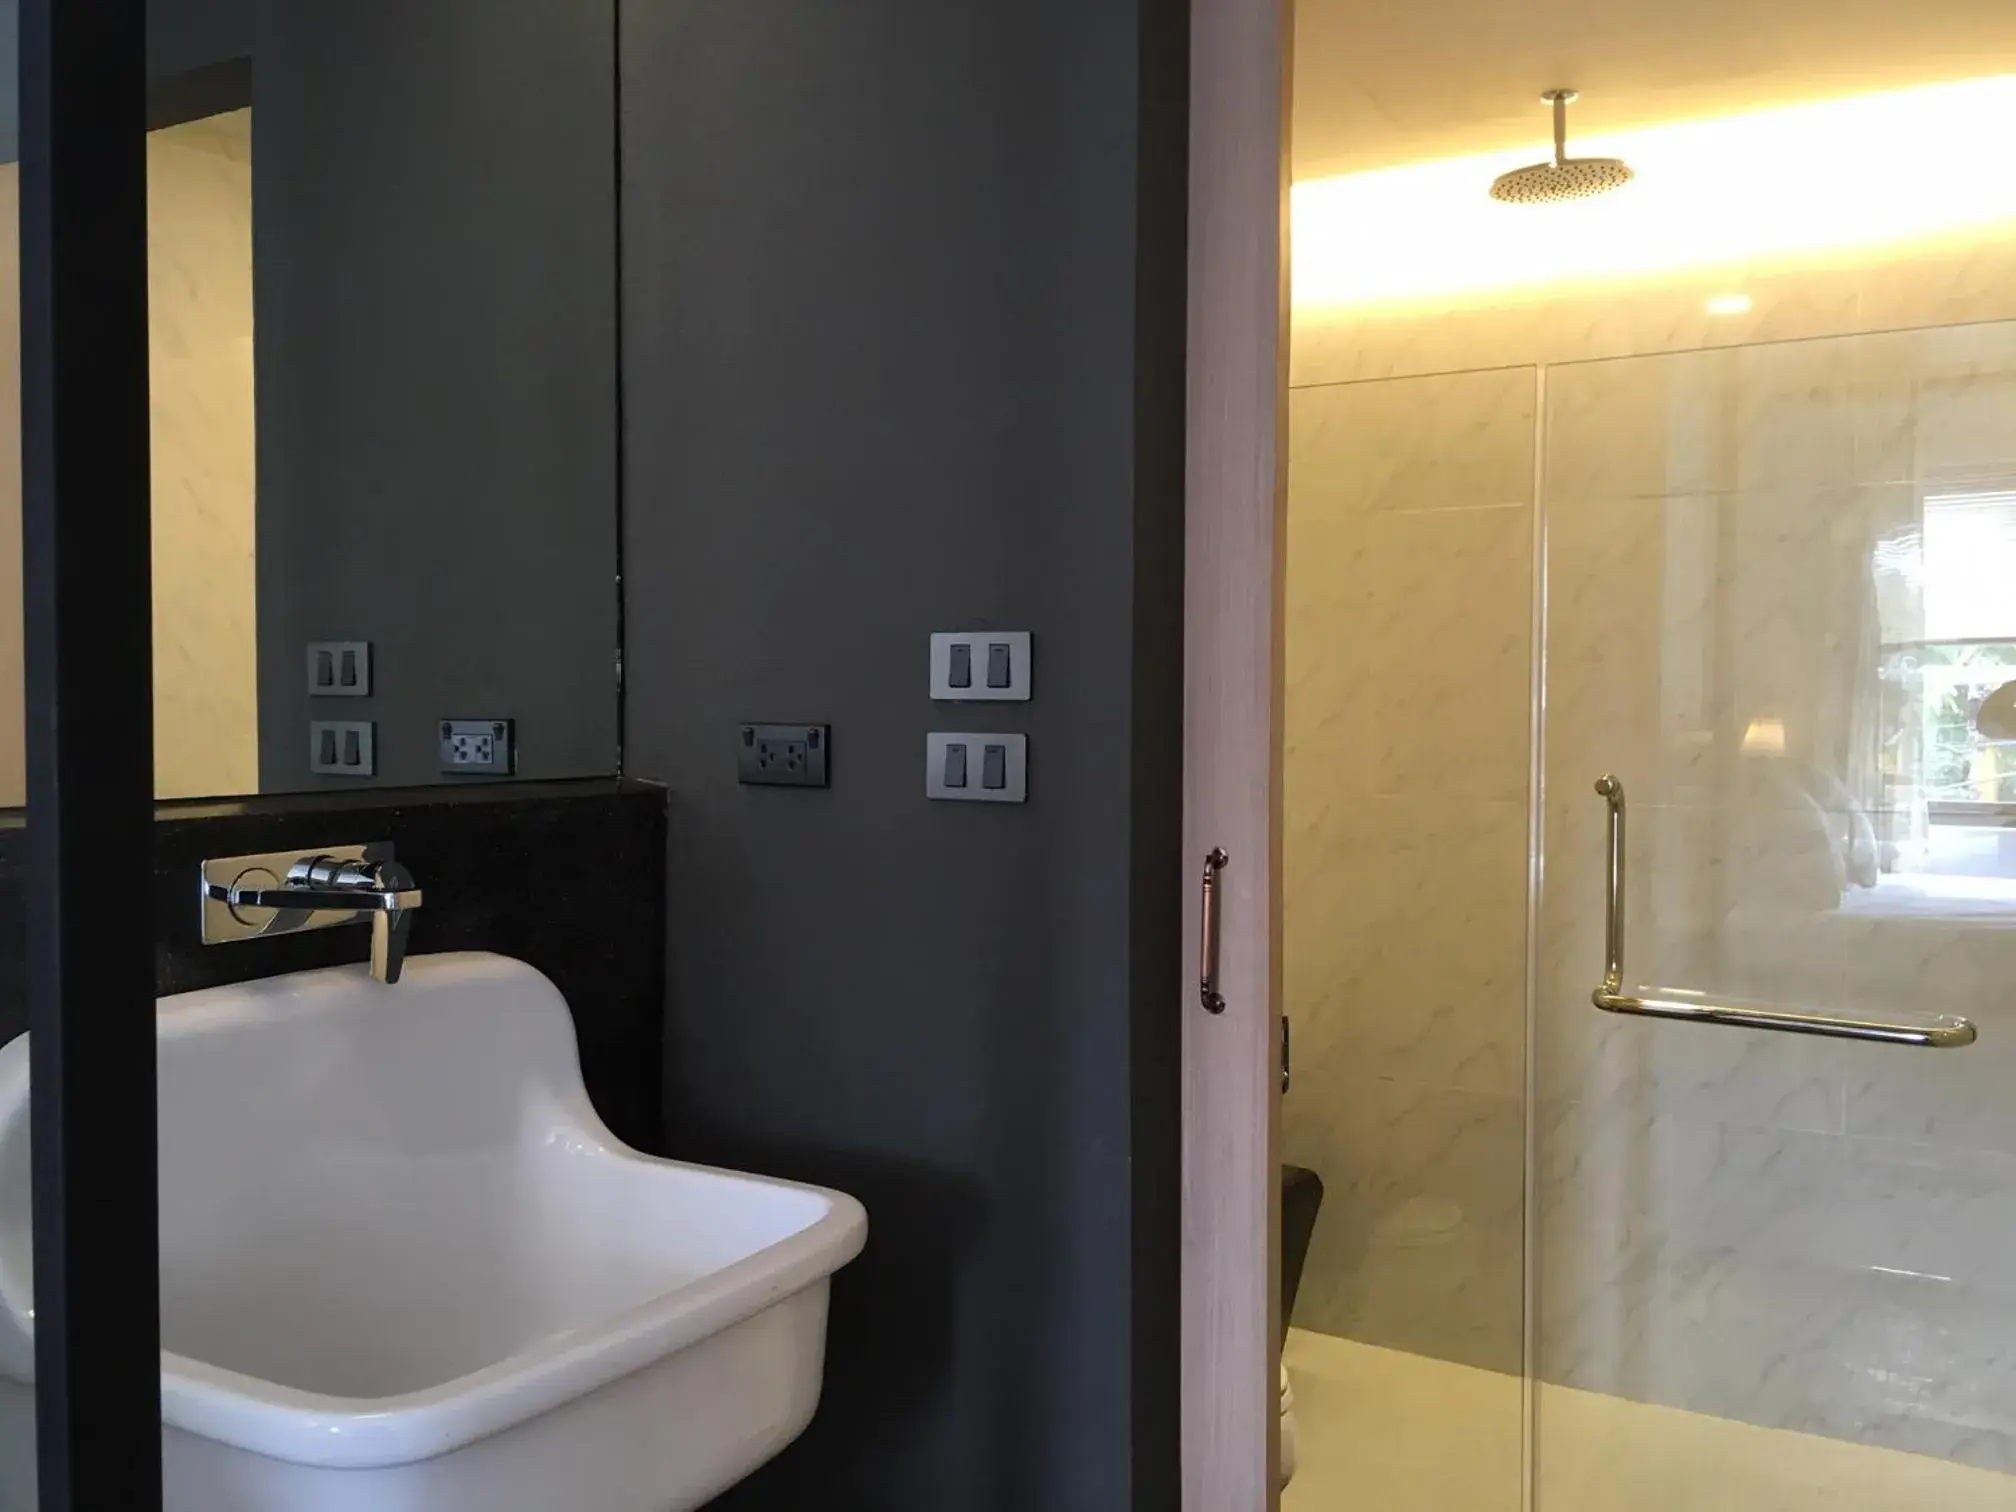 Bathroom in Hotel Noir